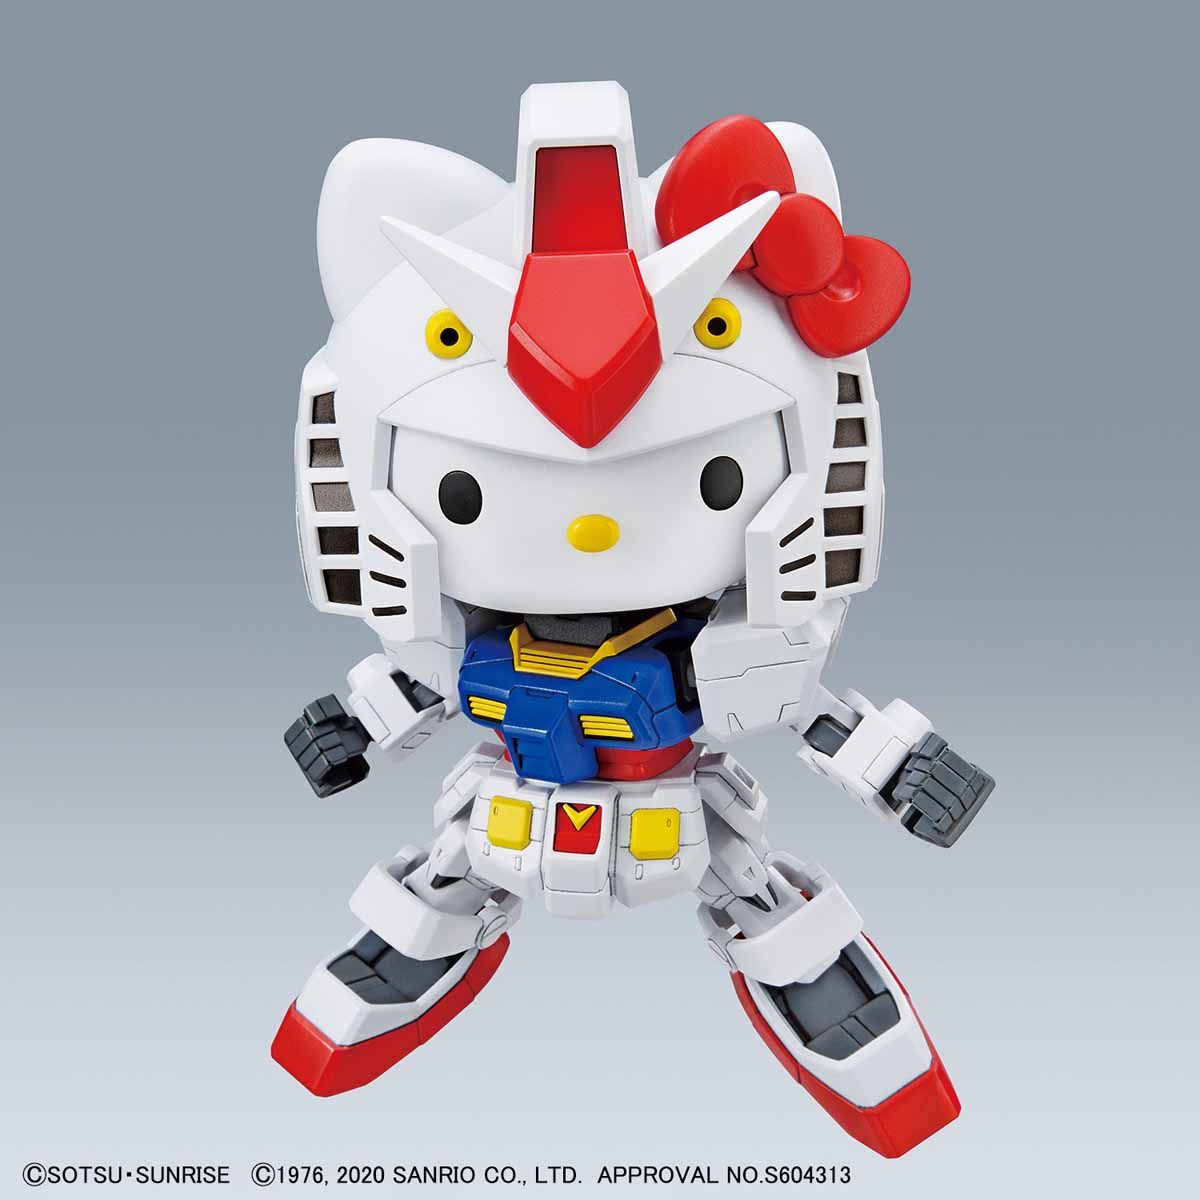 6月25日起，購買【Hello Kitty x 鋼彈模型】掃描商品外盒上活動貼紙(QR-CODE)，進入填.jpg